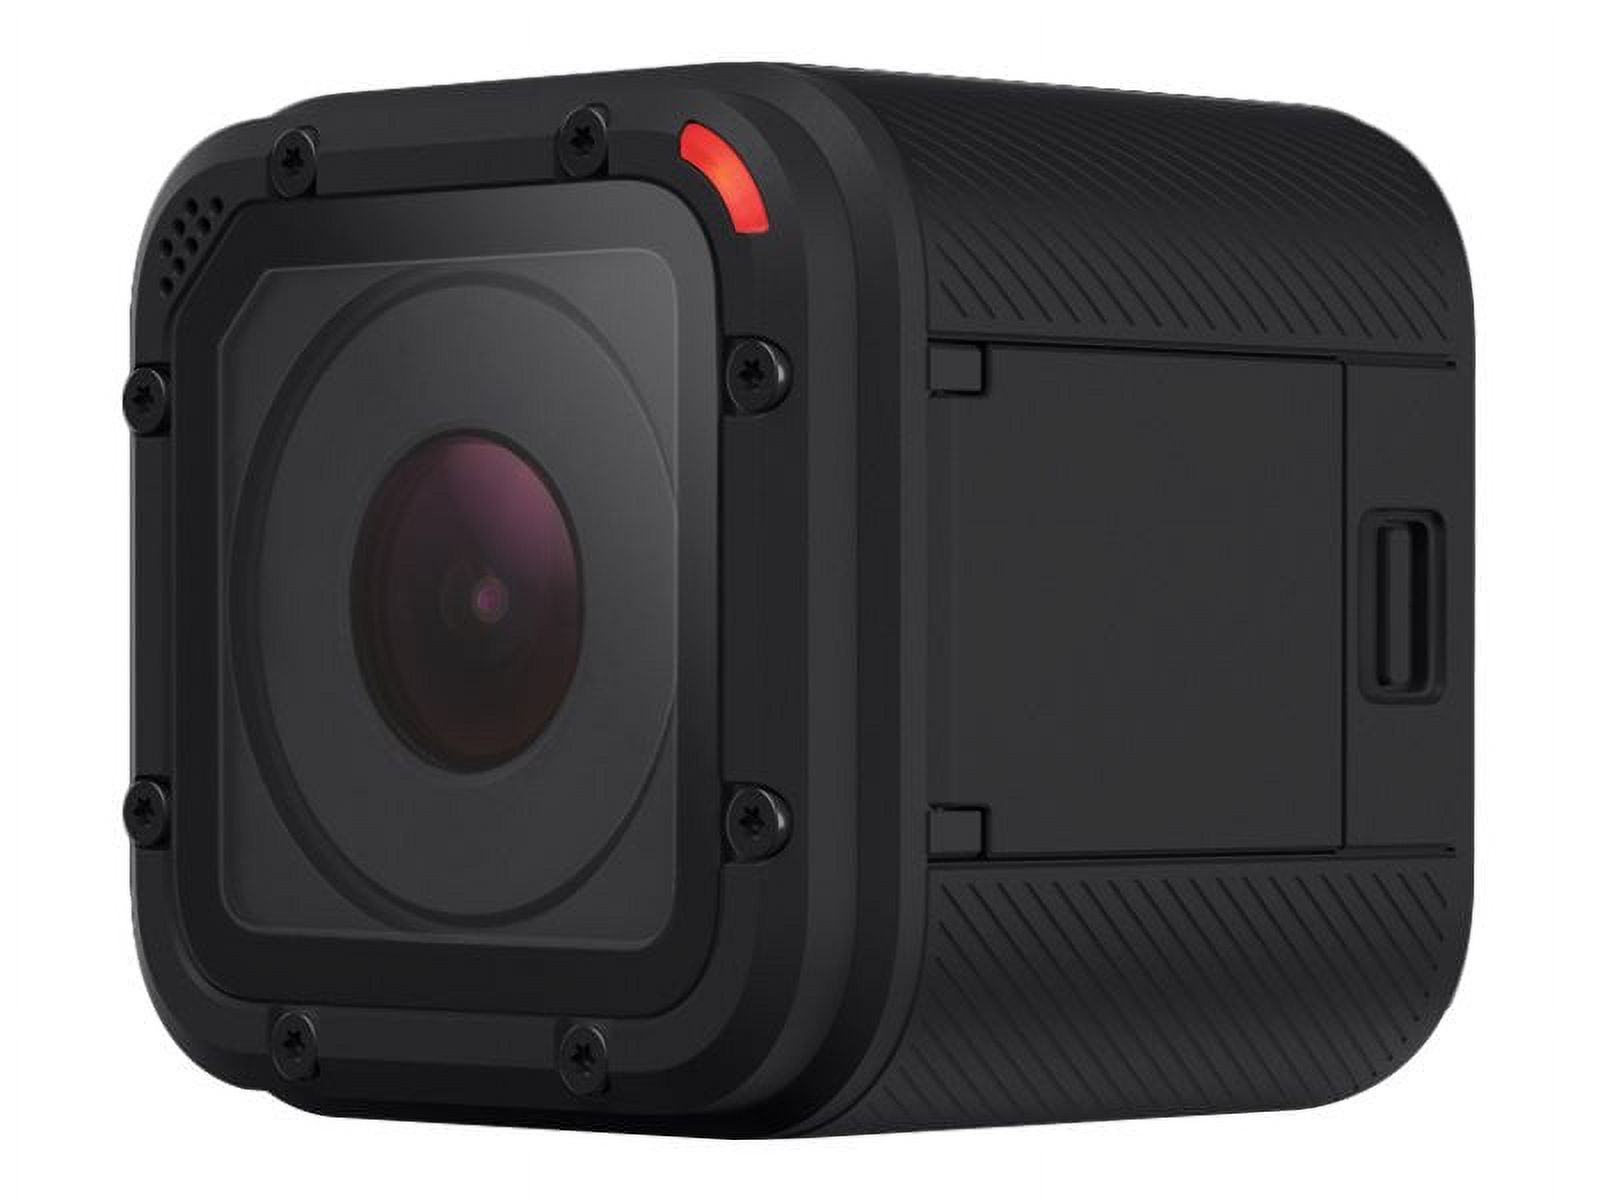 GoPro HERO Session - Bonus Bundle - action camera - 1440p / 30 fps - 8.0 MP - Wireless LAN - underwater up to 30ft - image 1 of 6